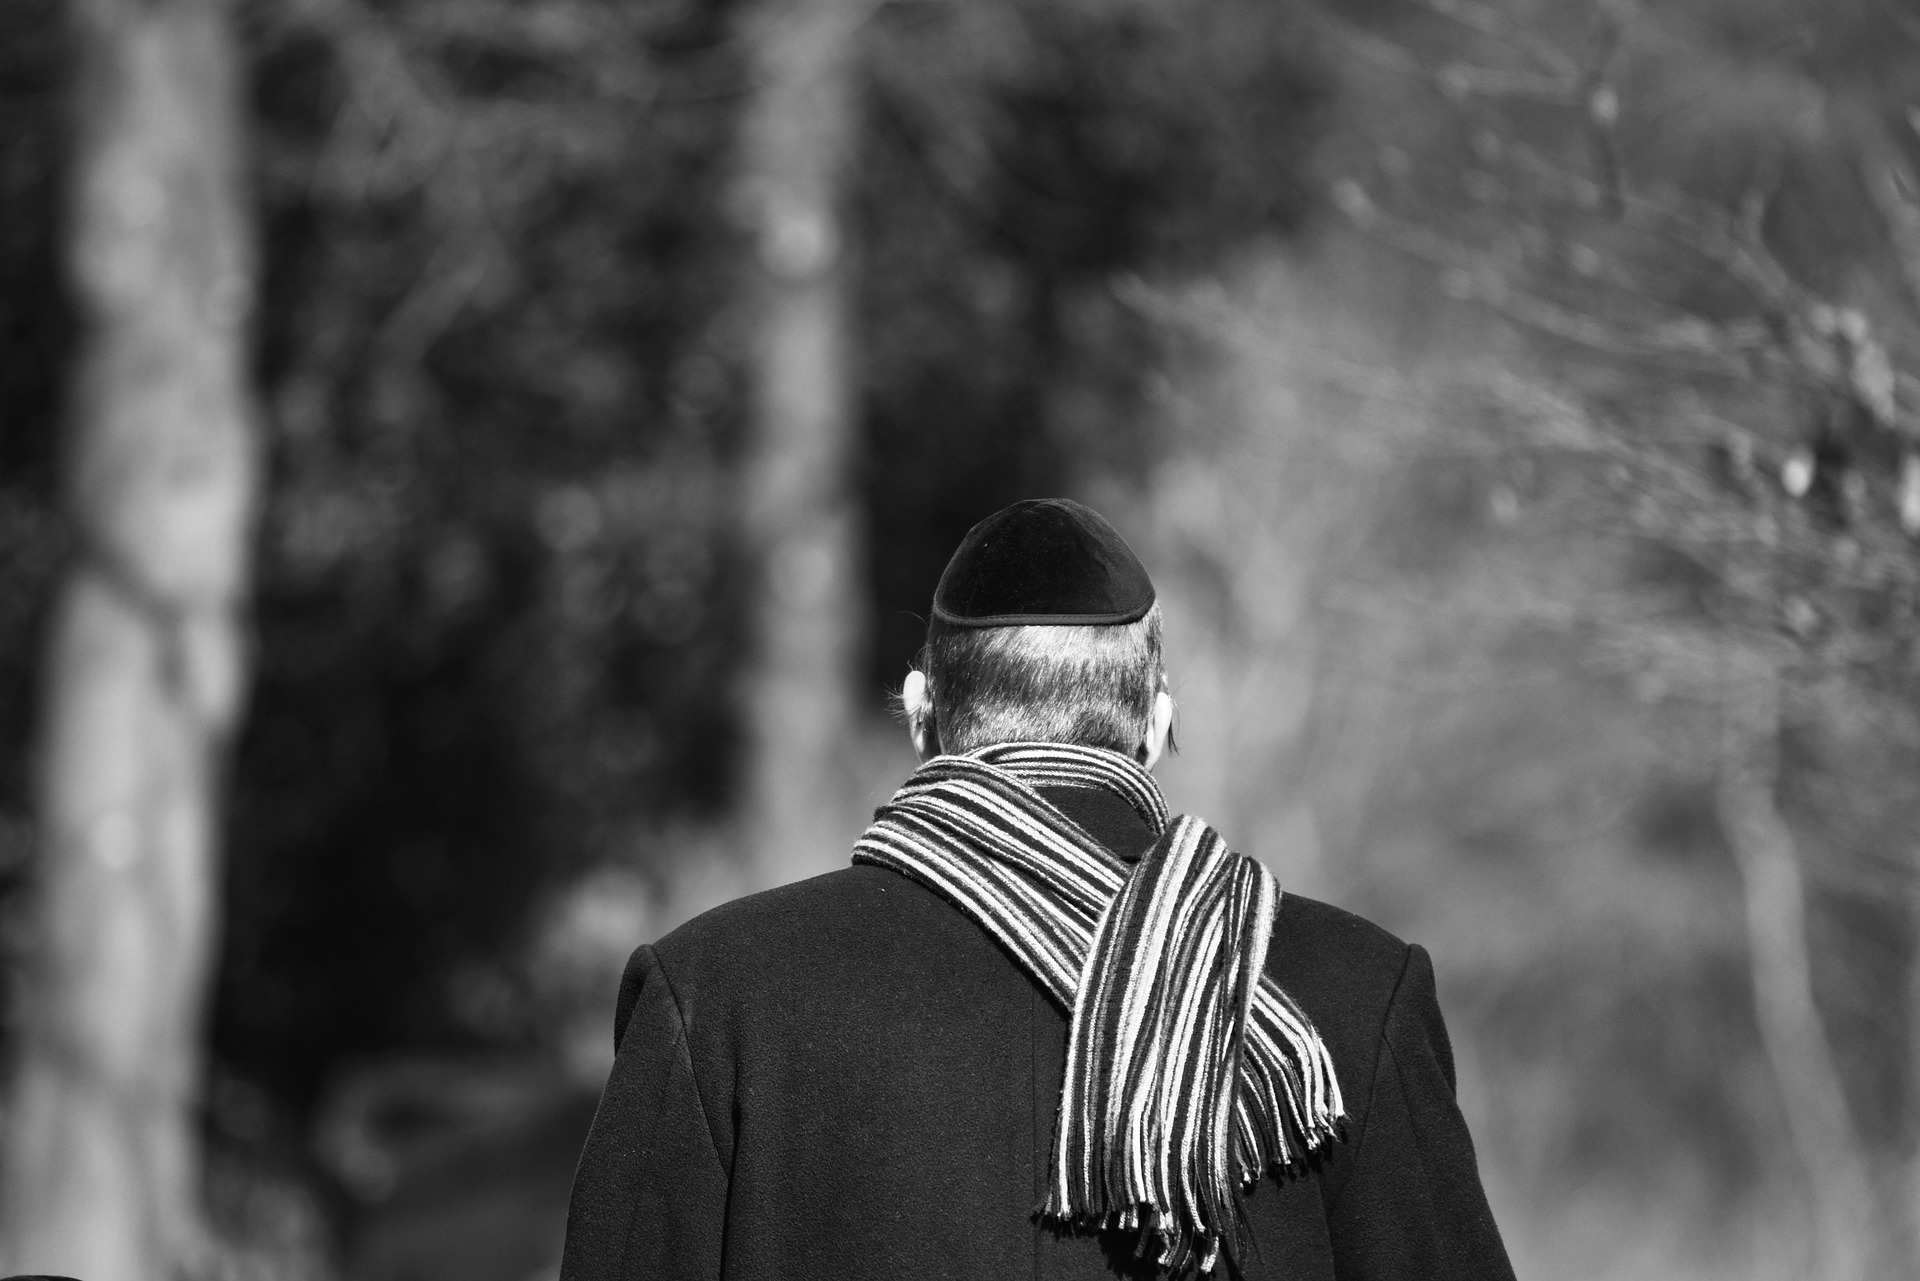 A Jewish man walking